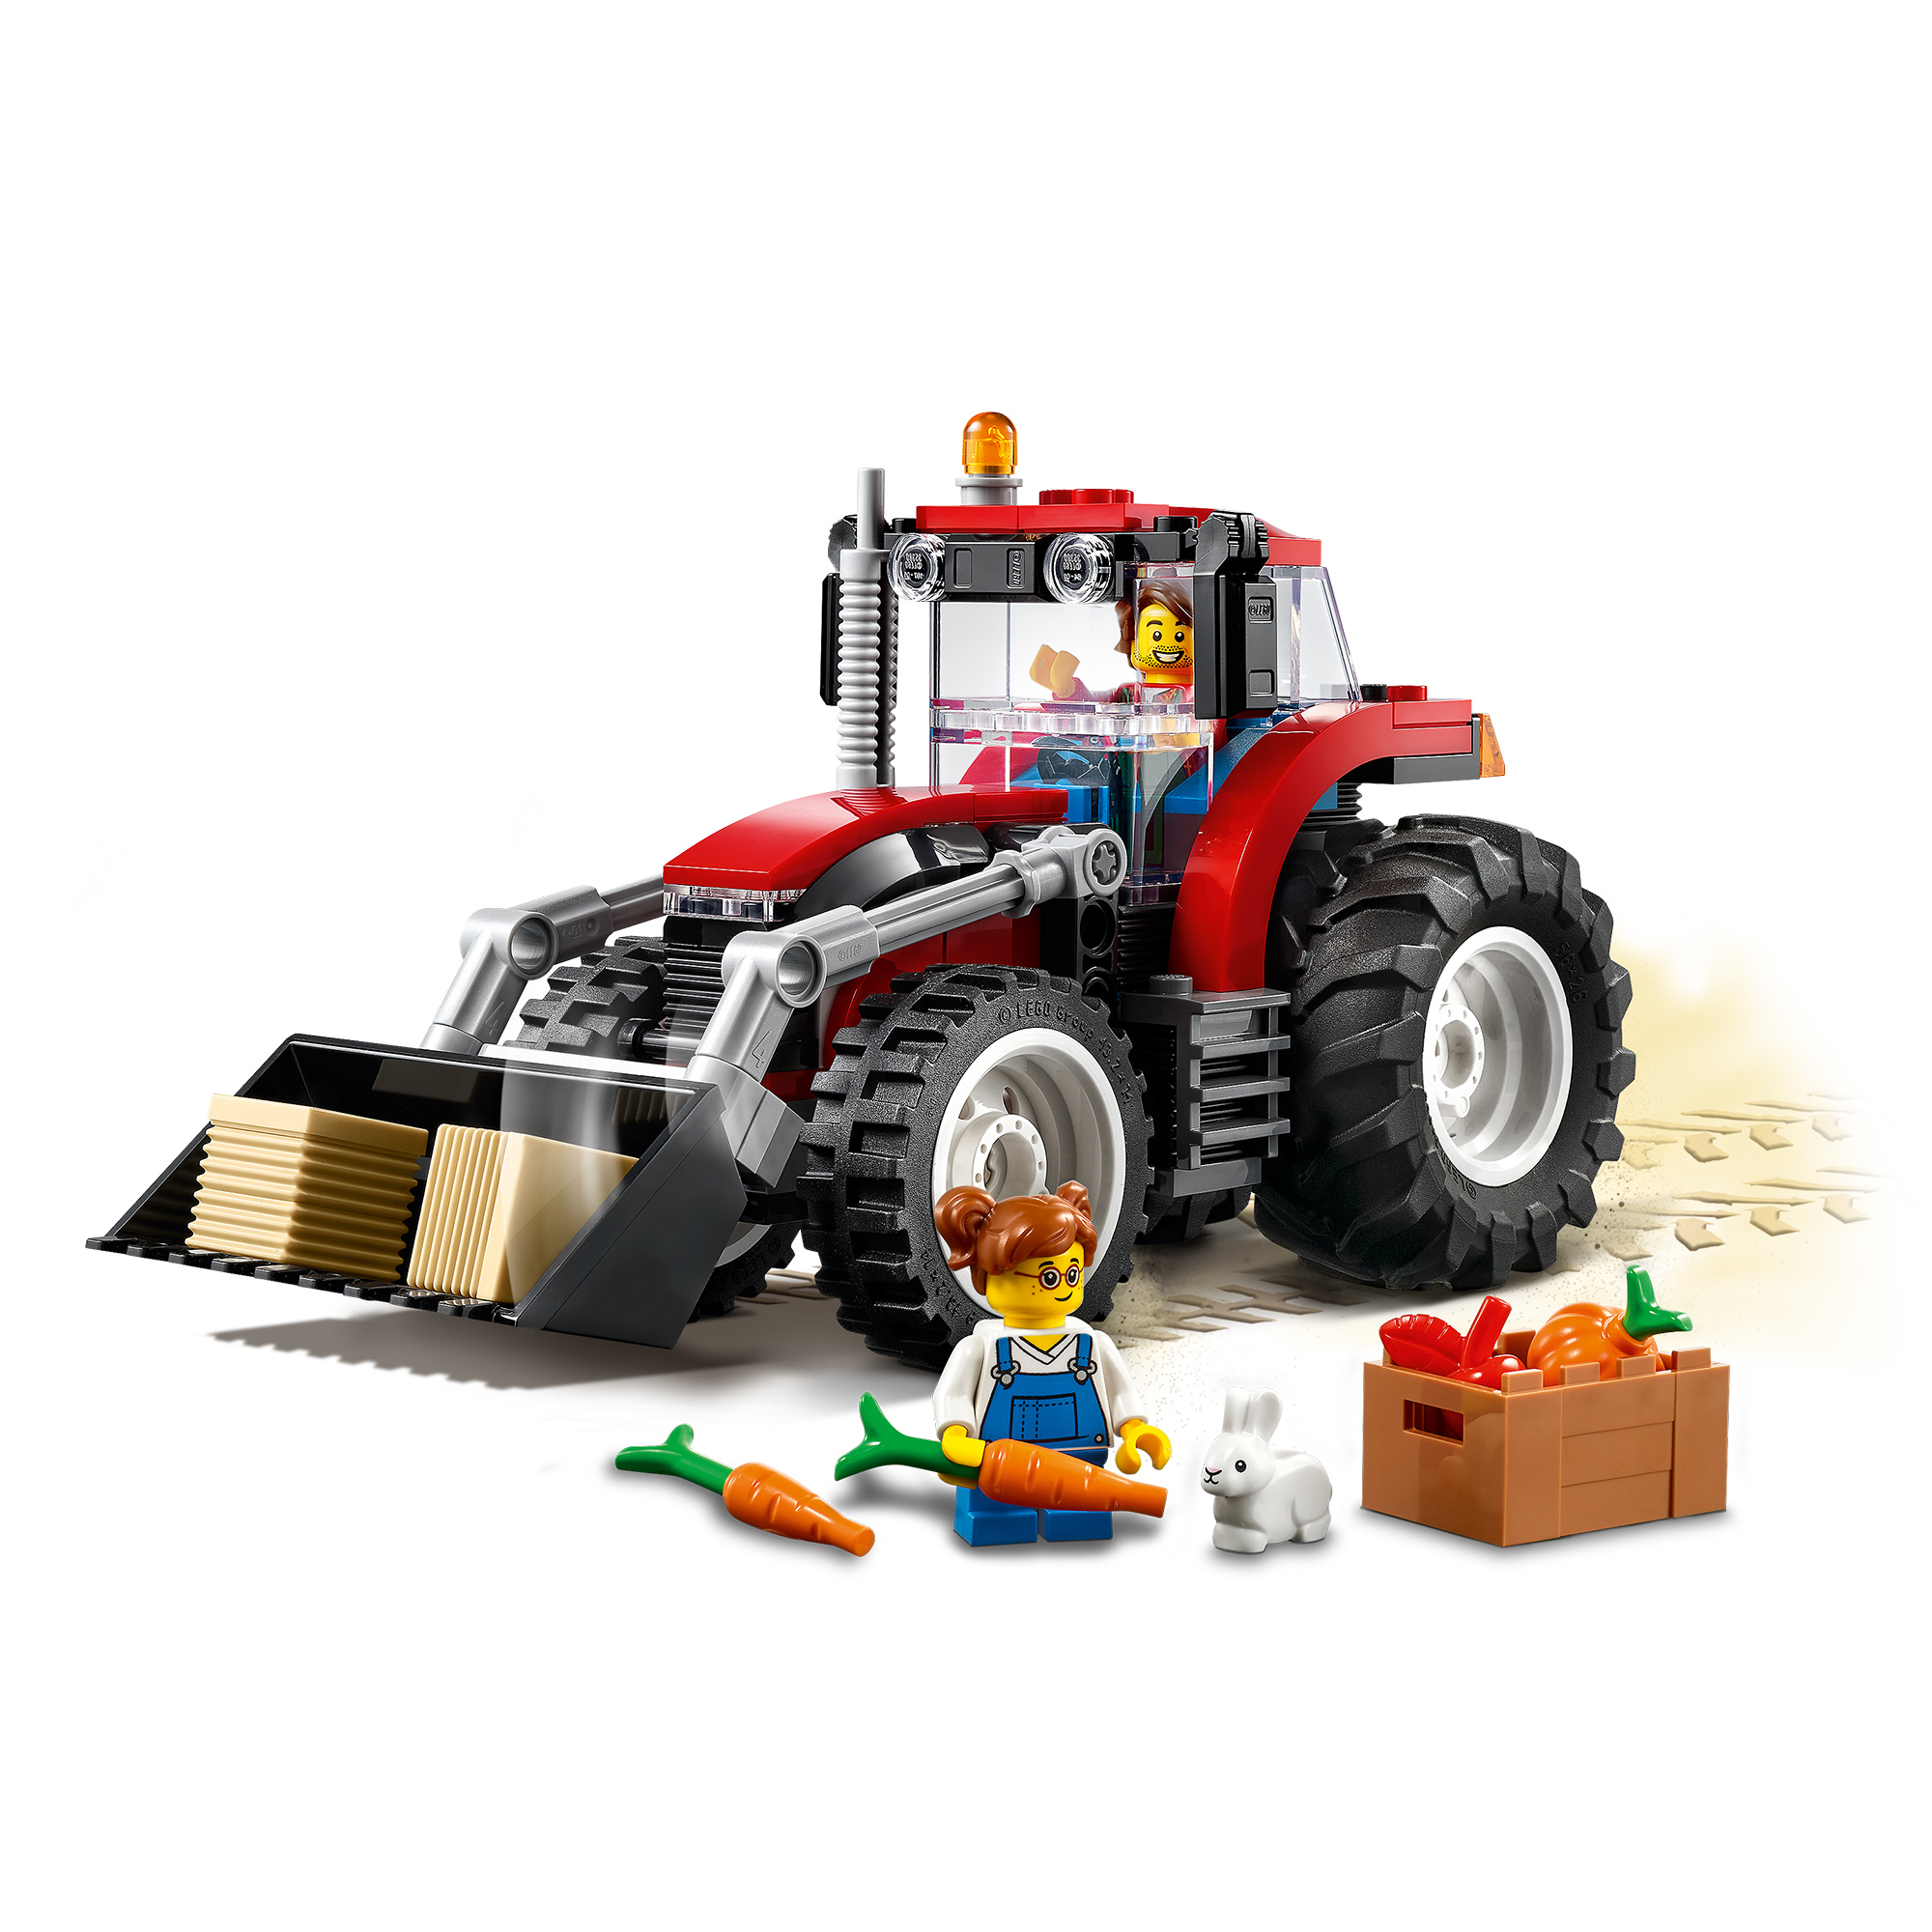 Mehrfarbig Bausatz, Traktor City 60287 LEGO